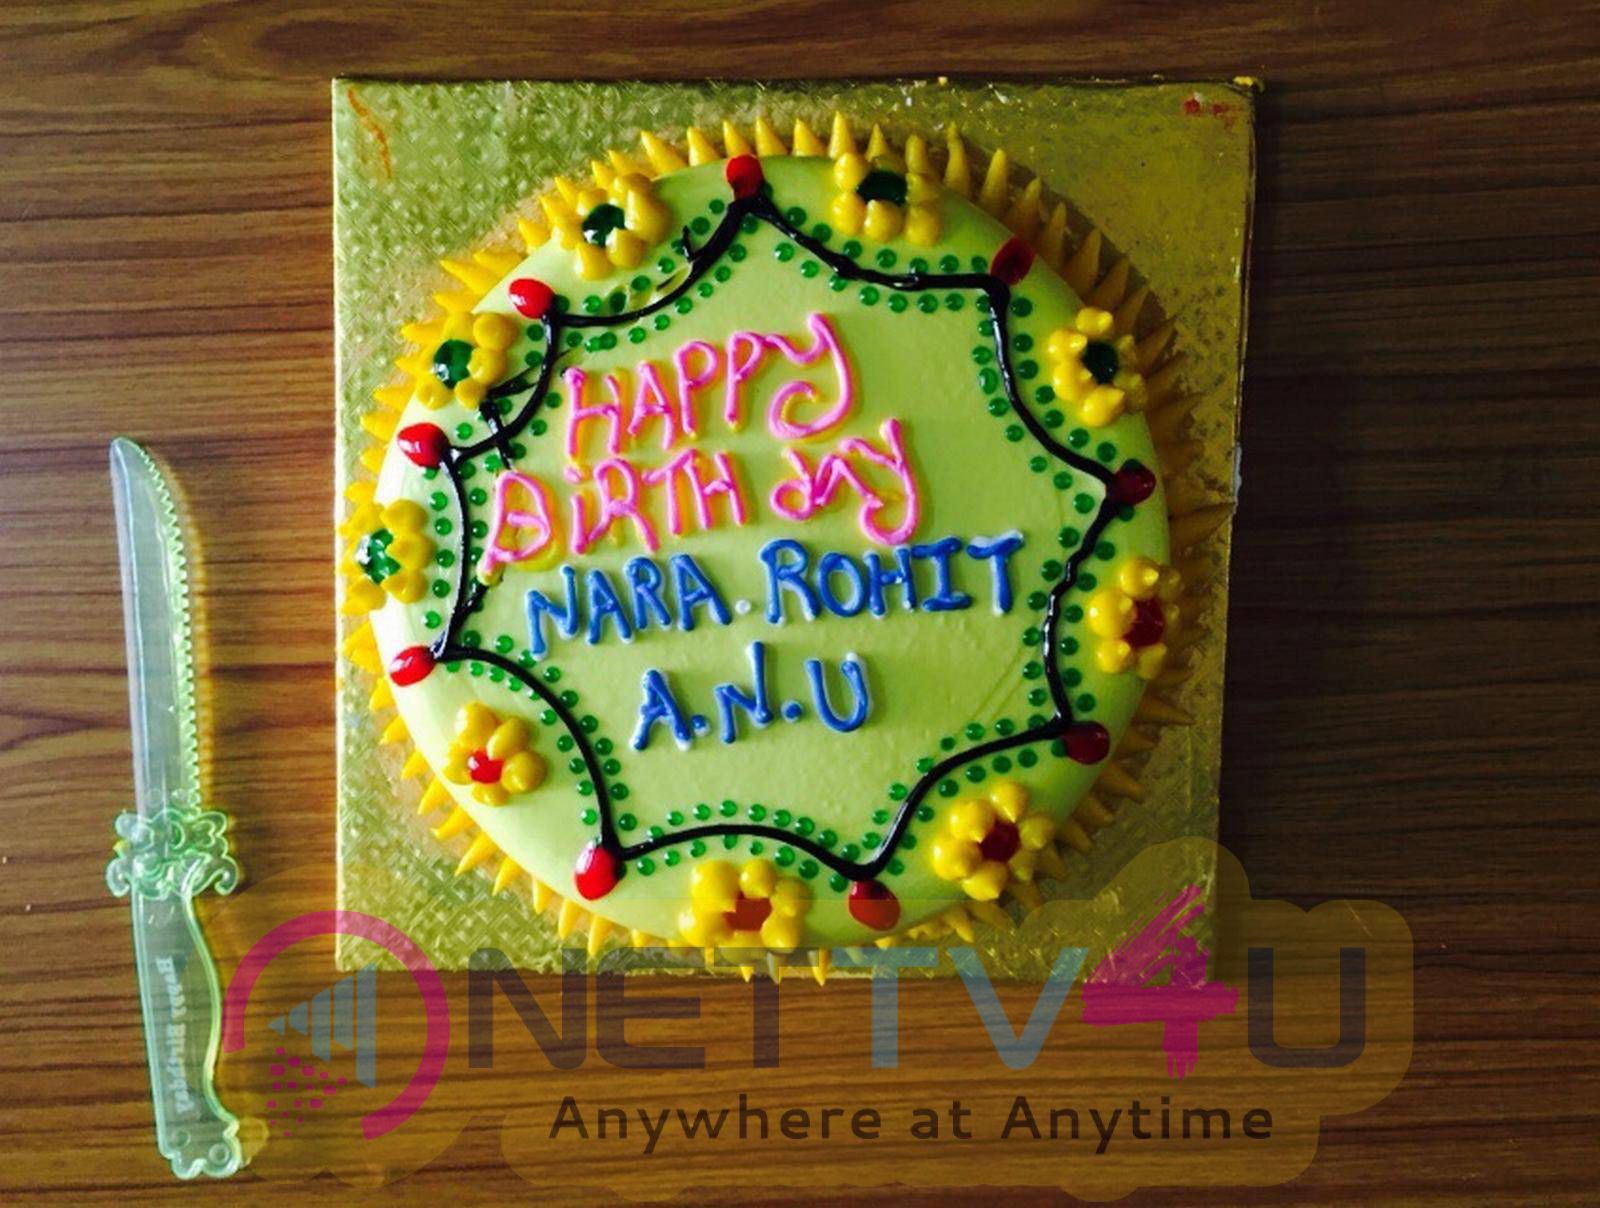 nara rohit birthday celebrations 2015 stills 27